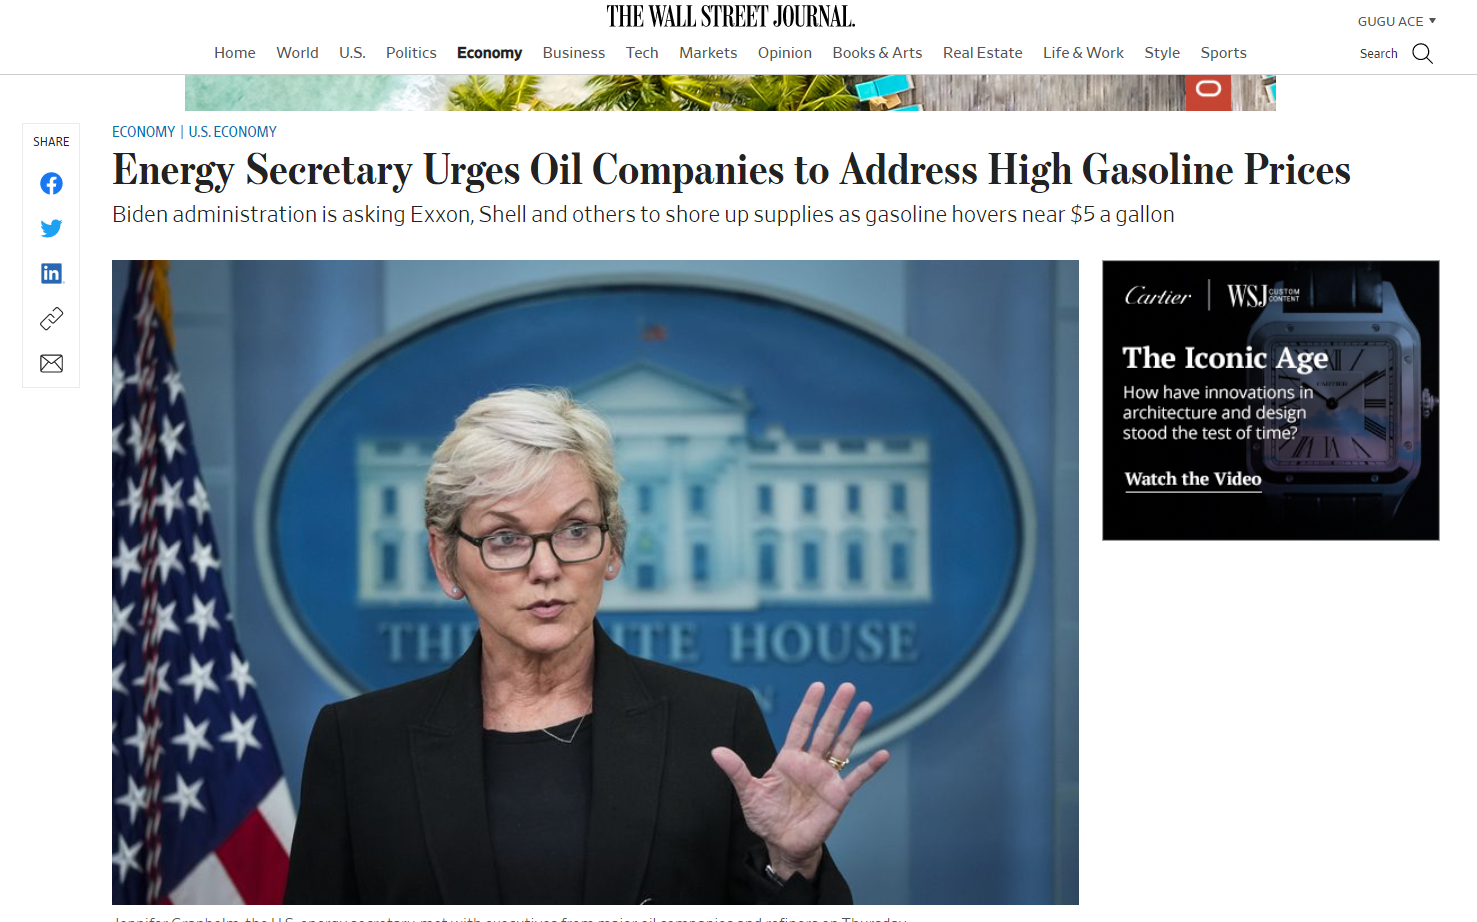 汽油价格谈判陷入僵局 美政府与石油公司互相“甩锅”